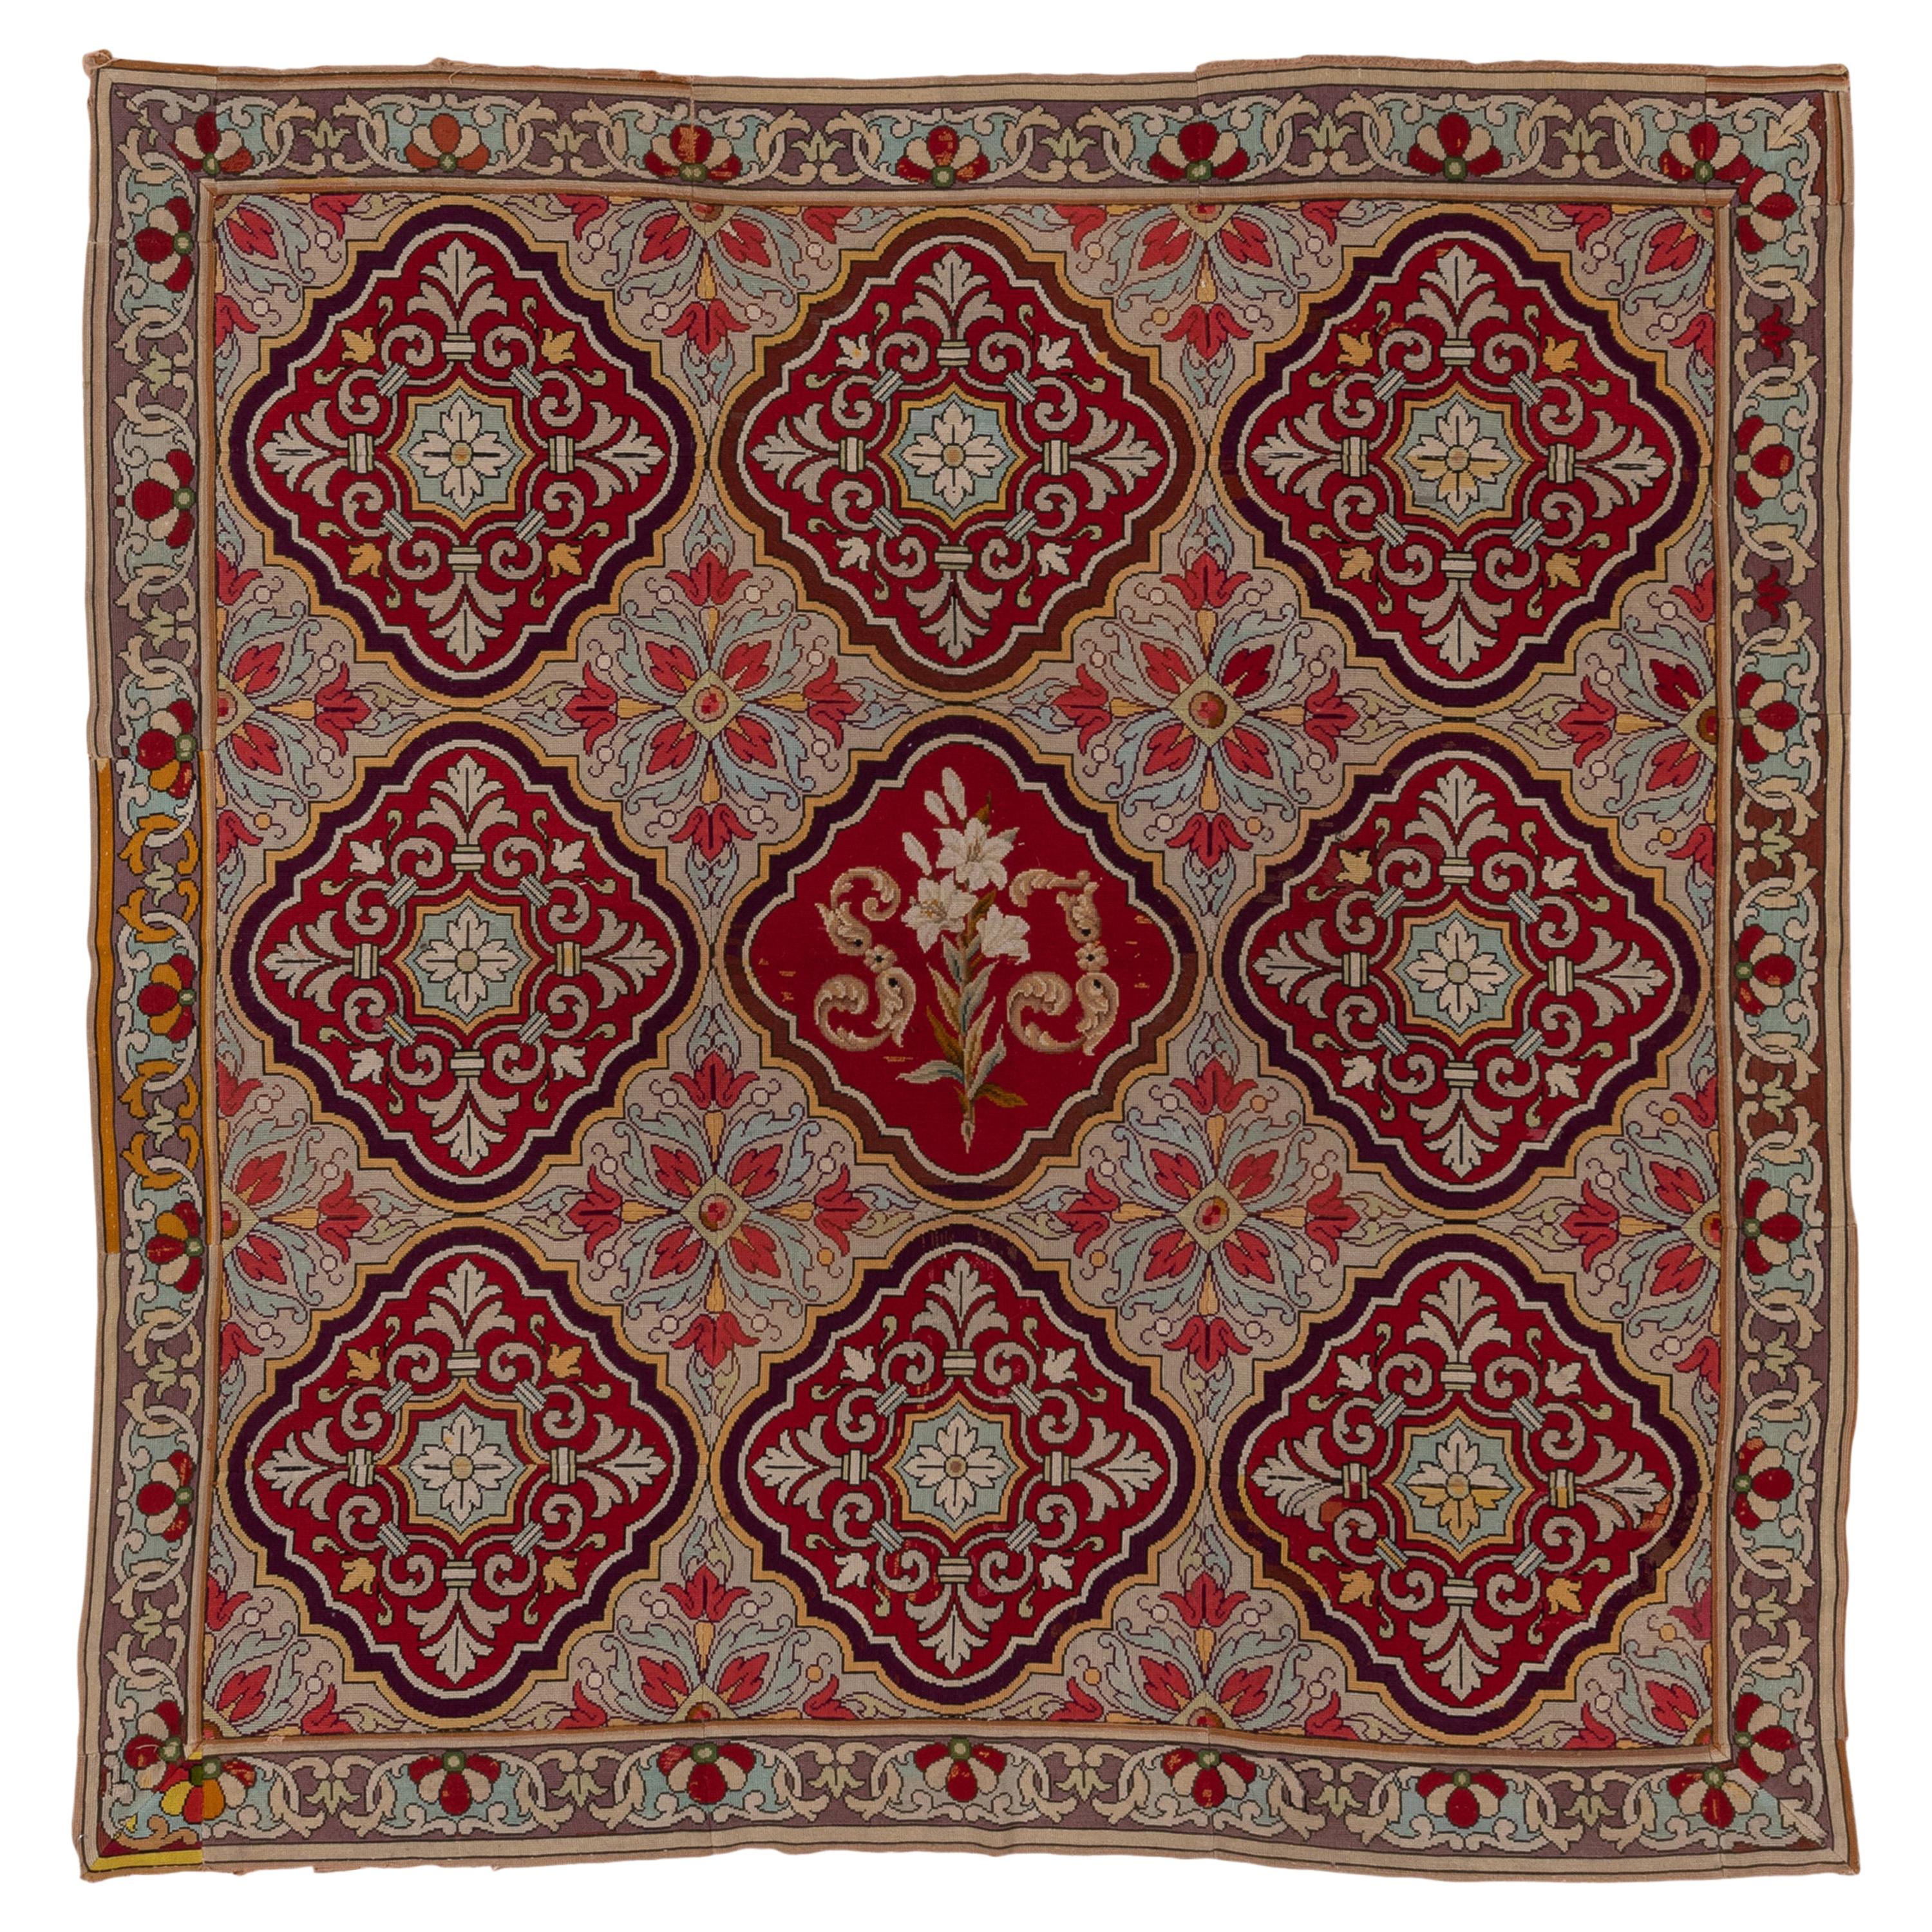 Seltene antike Französisch Needlepoint Quadrat Teppich, reiche Farben